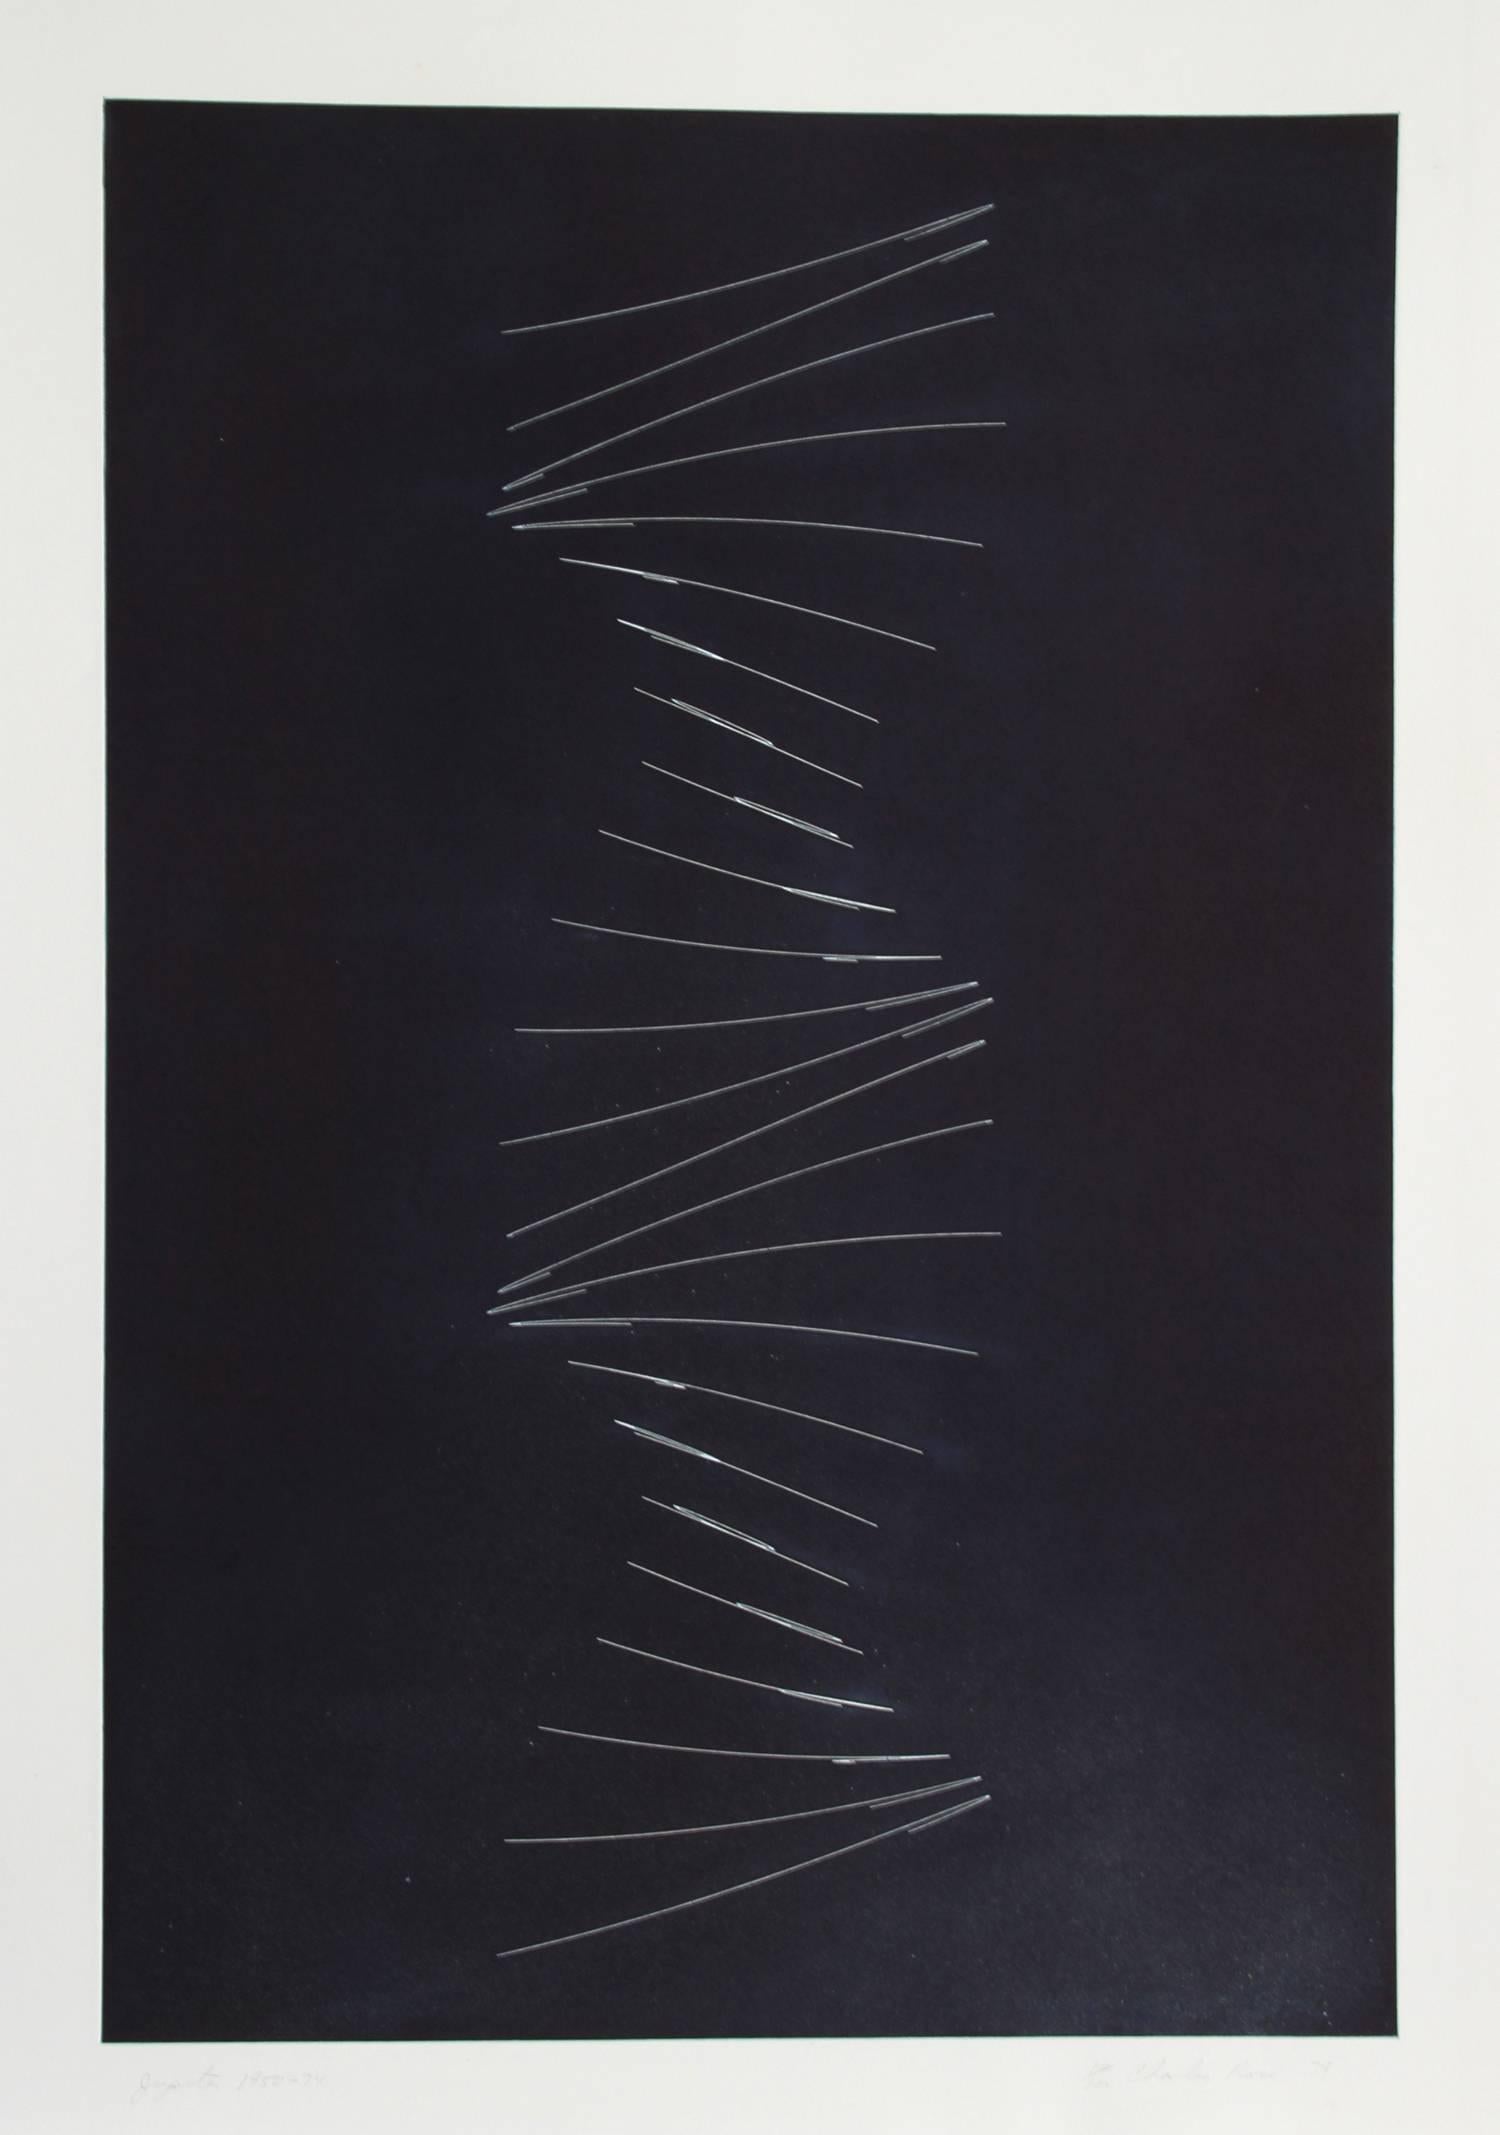 Künstler: Charles Ross, Amerikaner (1937 - )
Titel: Jupiter 1950 - 1974
Jahr: 1979
Medium: Aquatinta-Radierung, mit Bleistift signiert und nummeriert
Auflage: 100, AP XX
Größe: 41 in. x 29 in. (104,14 cm x 73,66 cm)